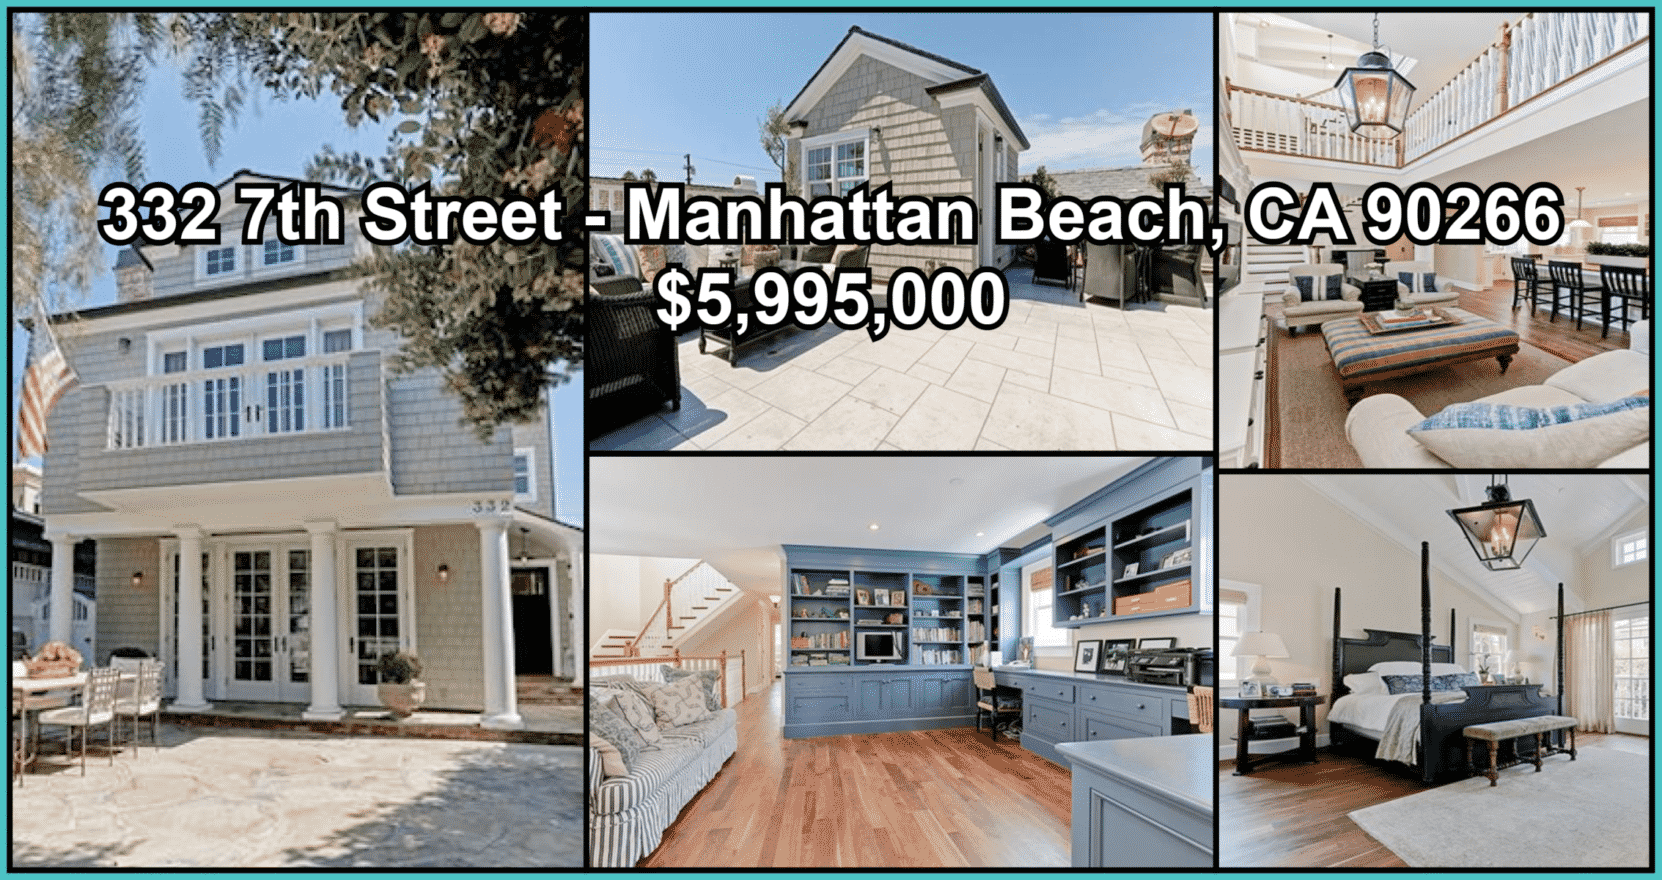 332 7th Street - Manhattan Beach